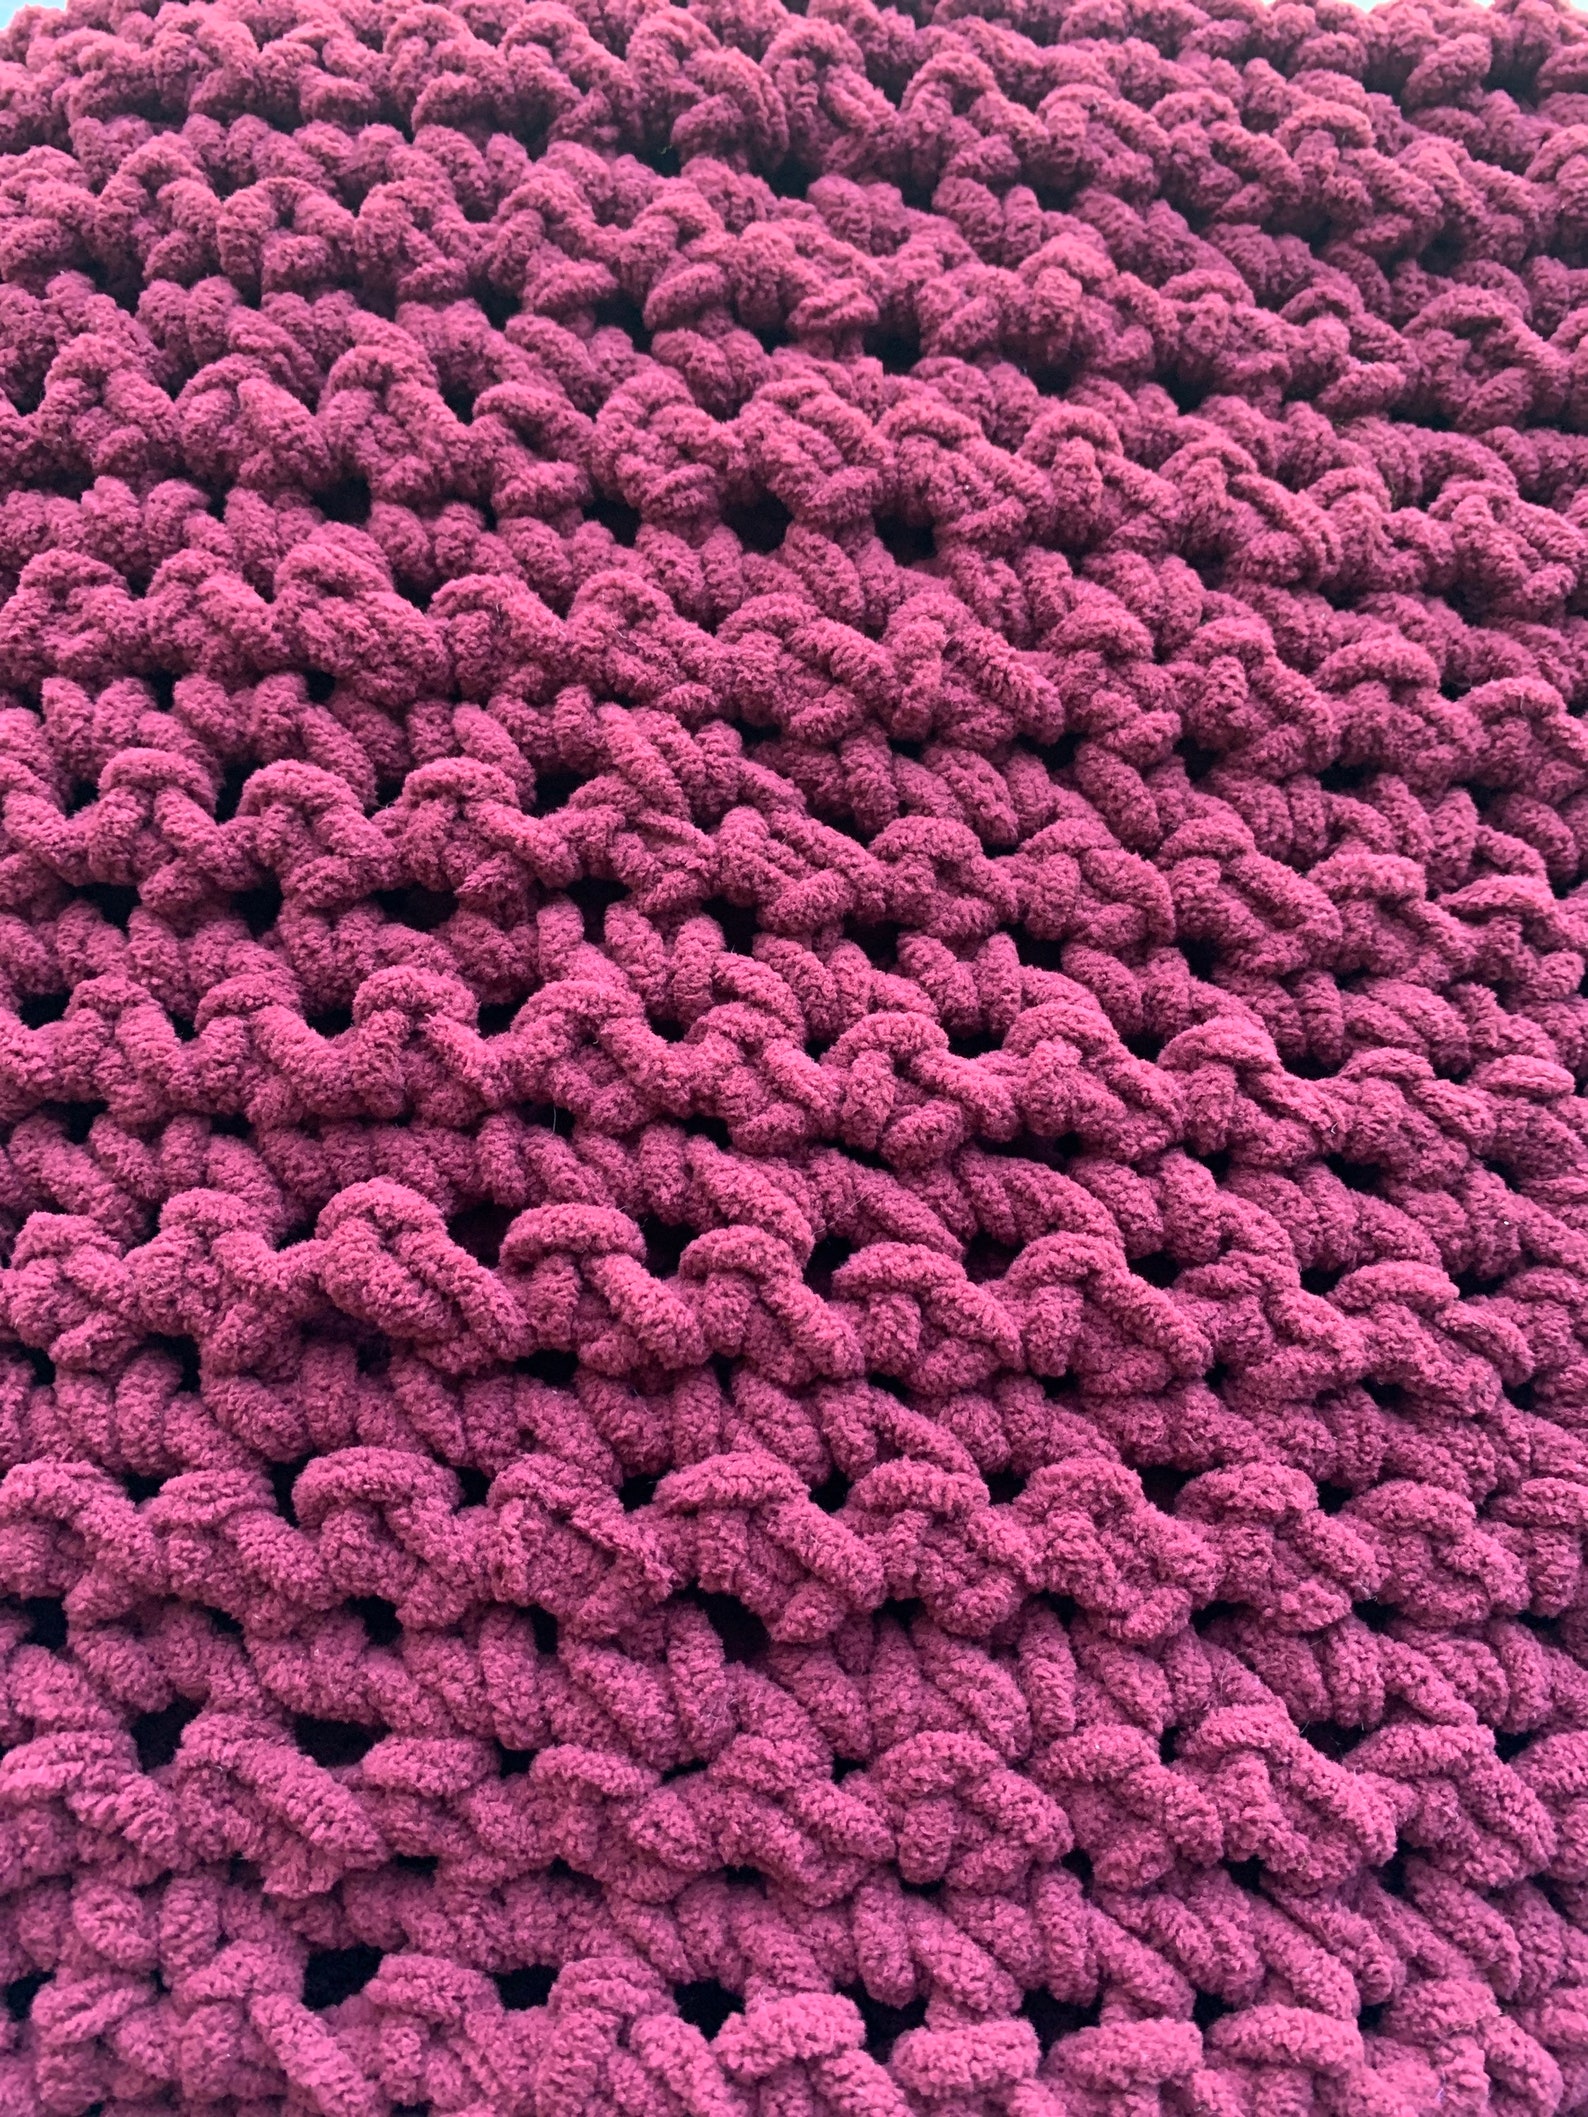 Handmade Crocheted FUZZY blanket | Etsy